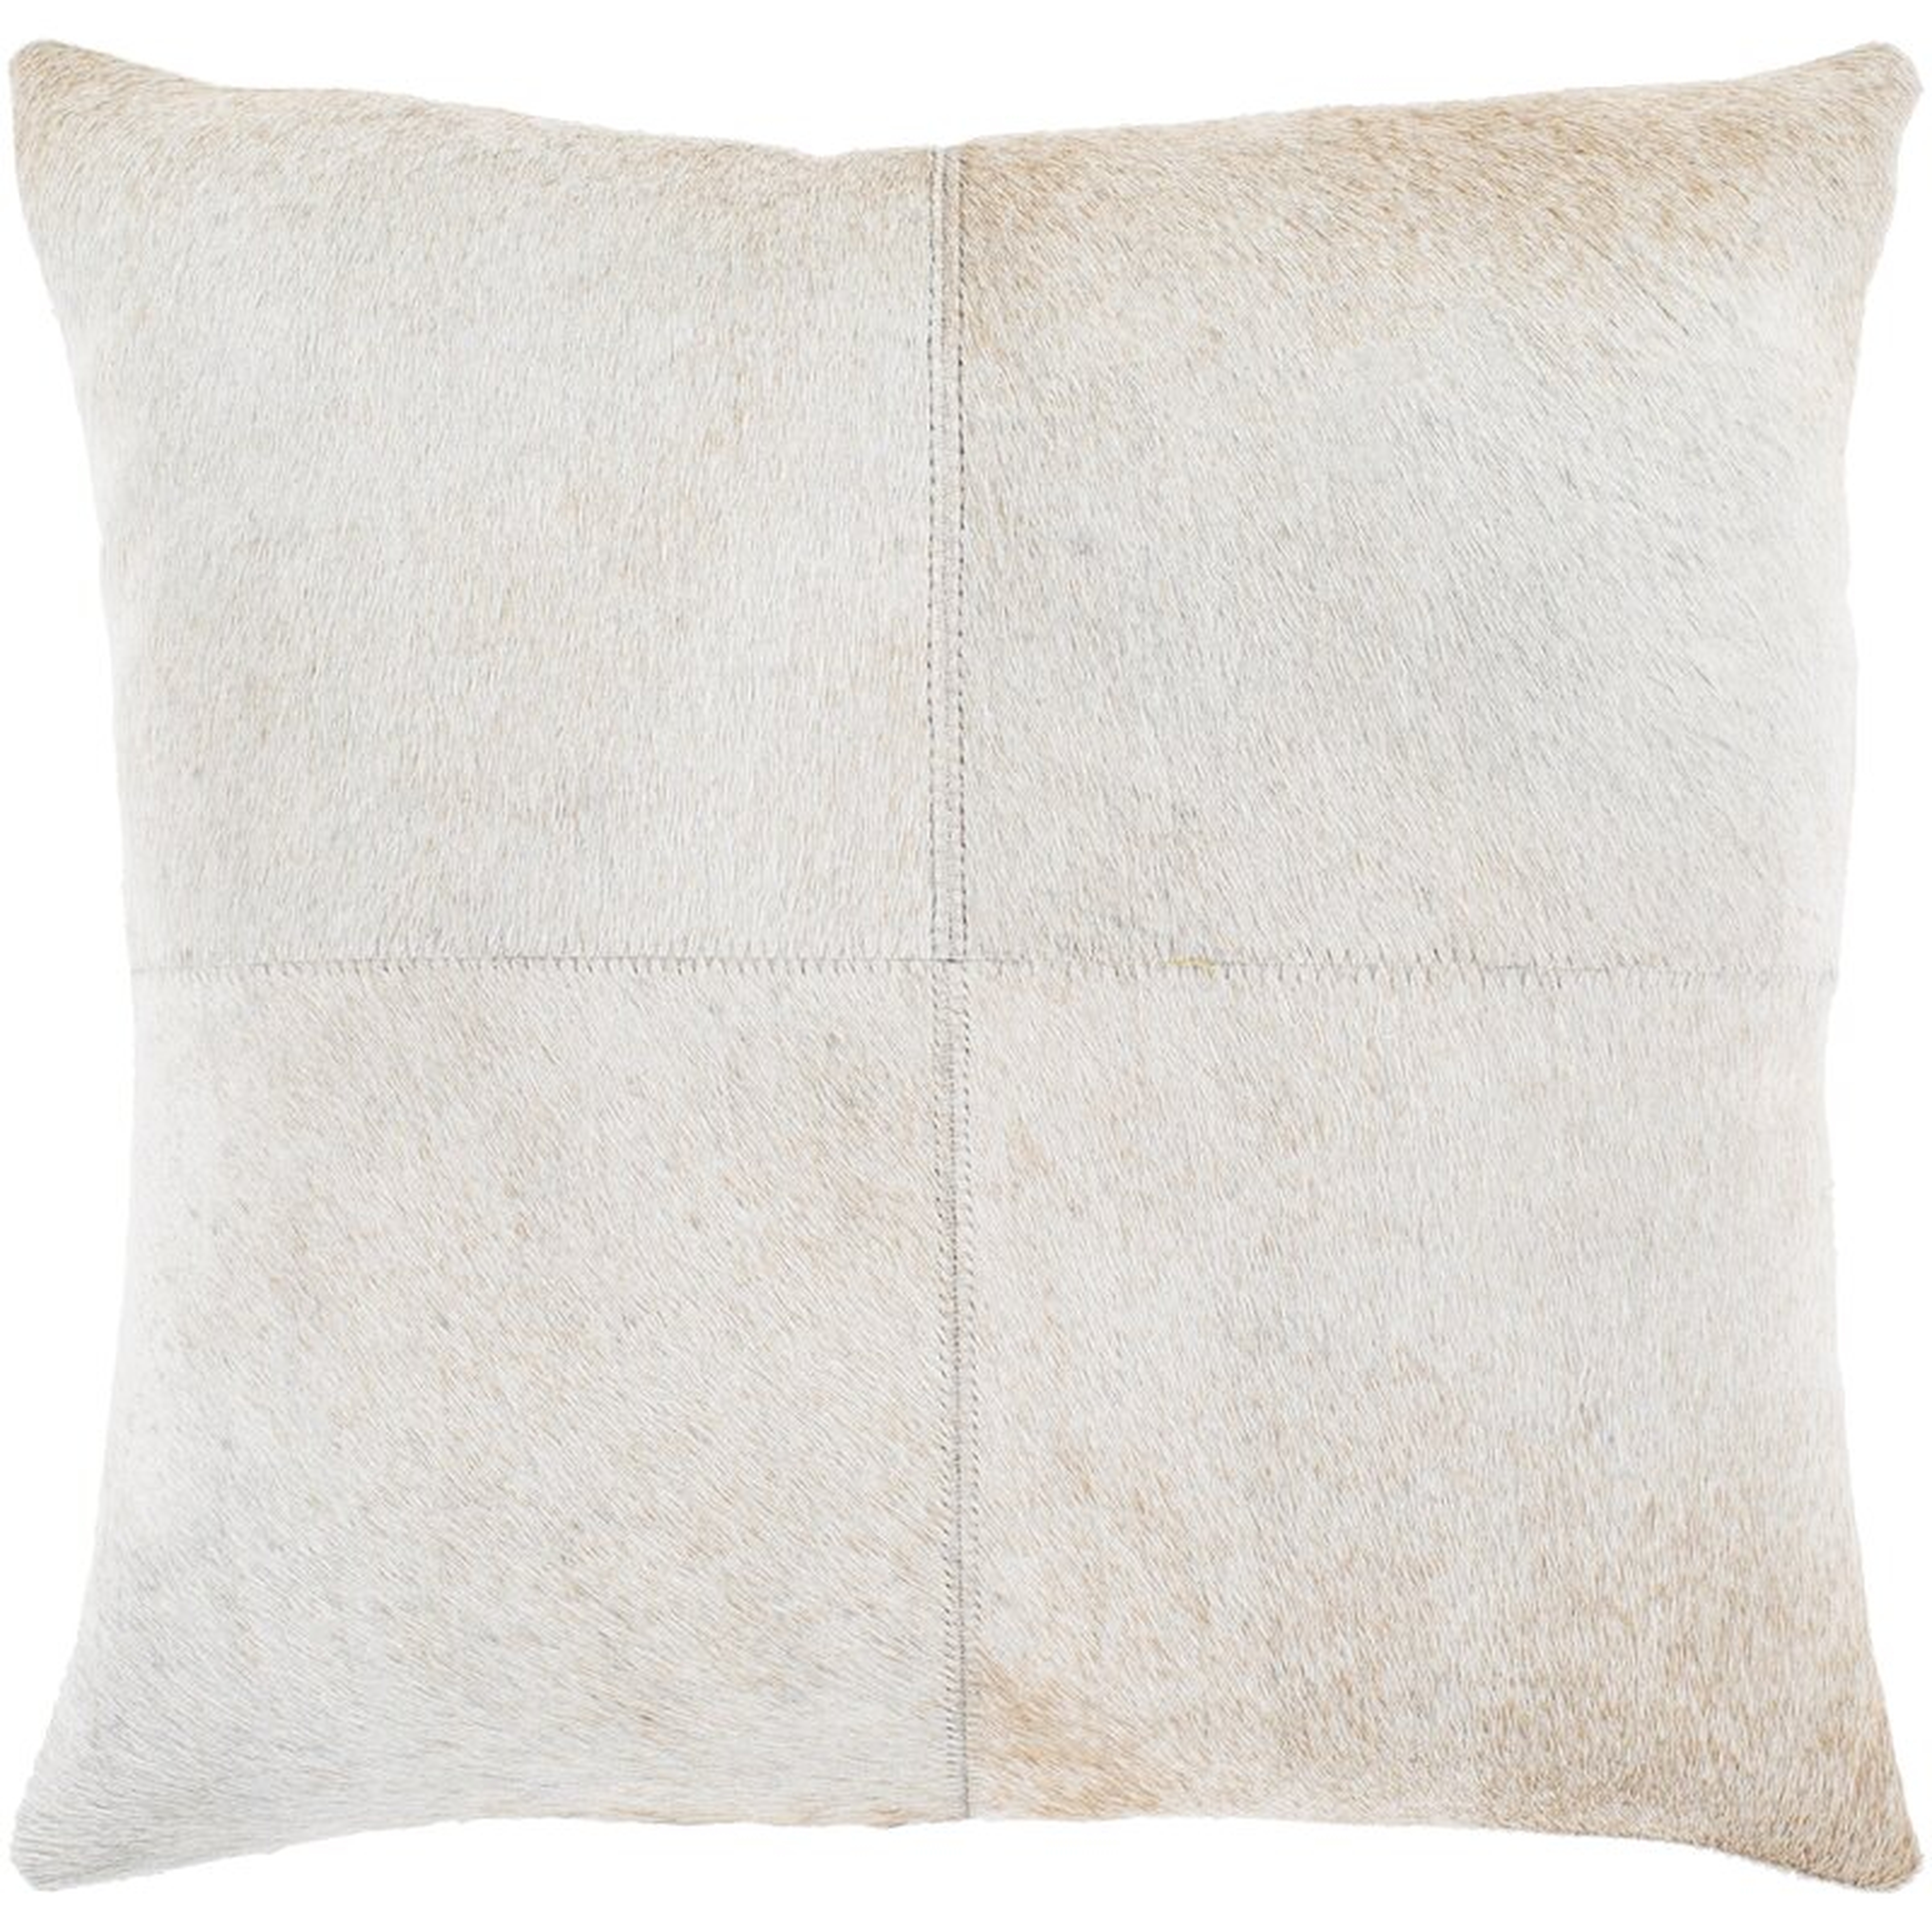 Zavala Square Leather Pillow Cover & Insert - Perigold